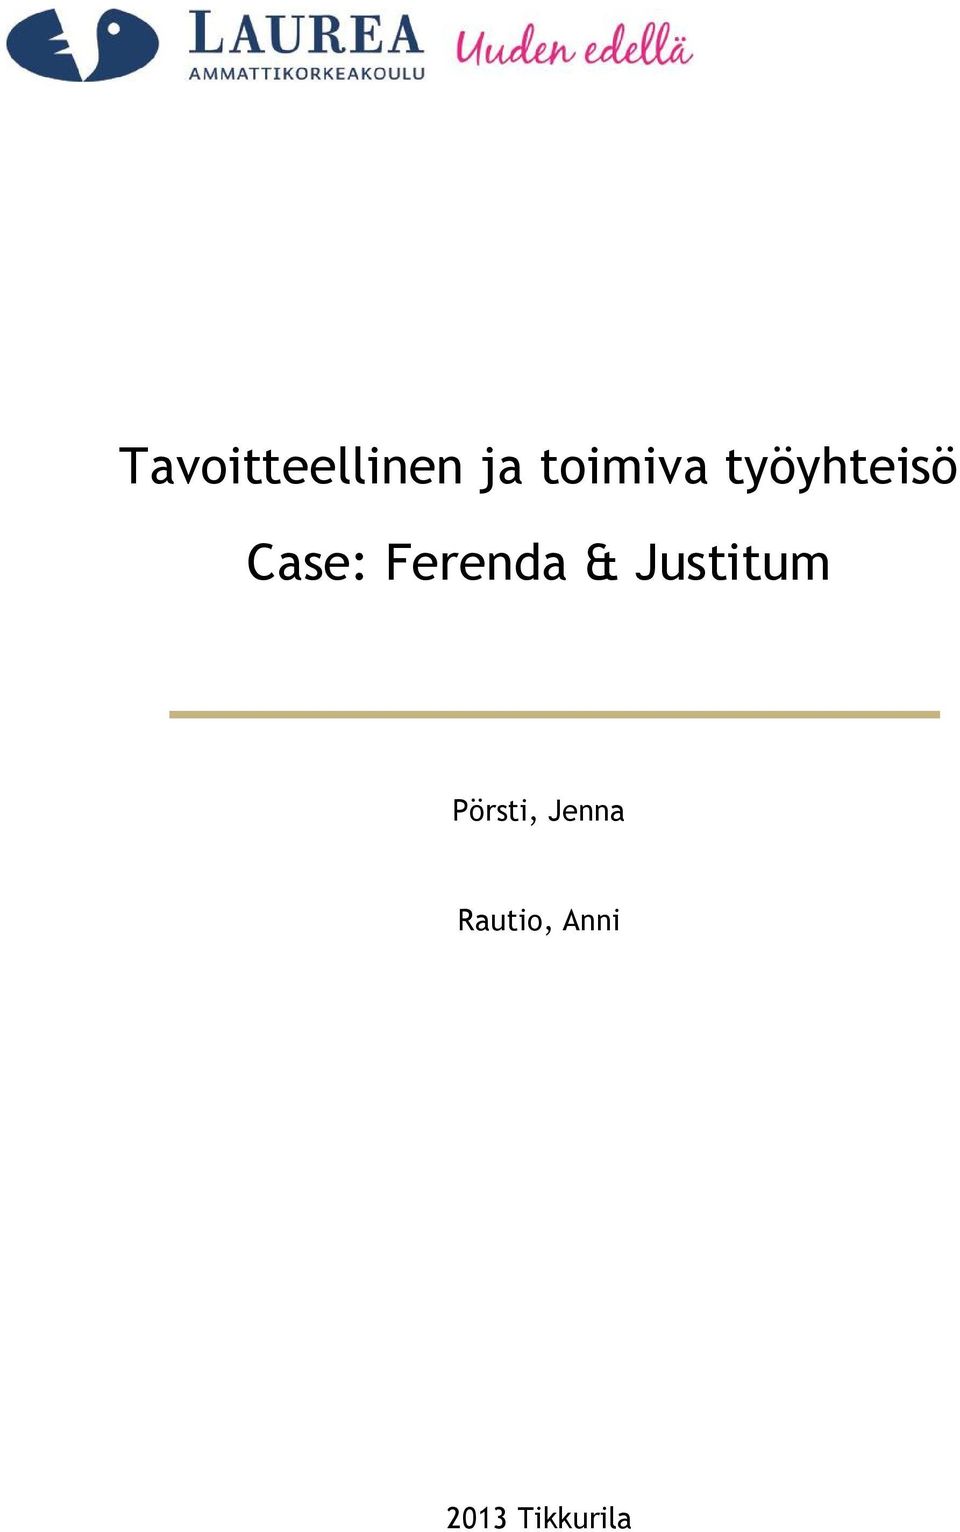 Ferenda & Justitum